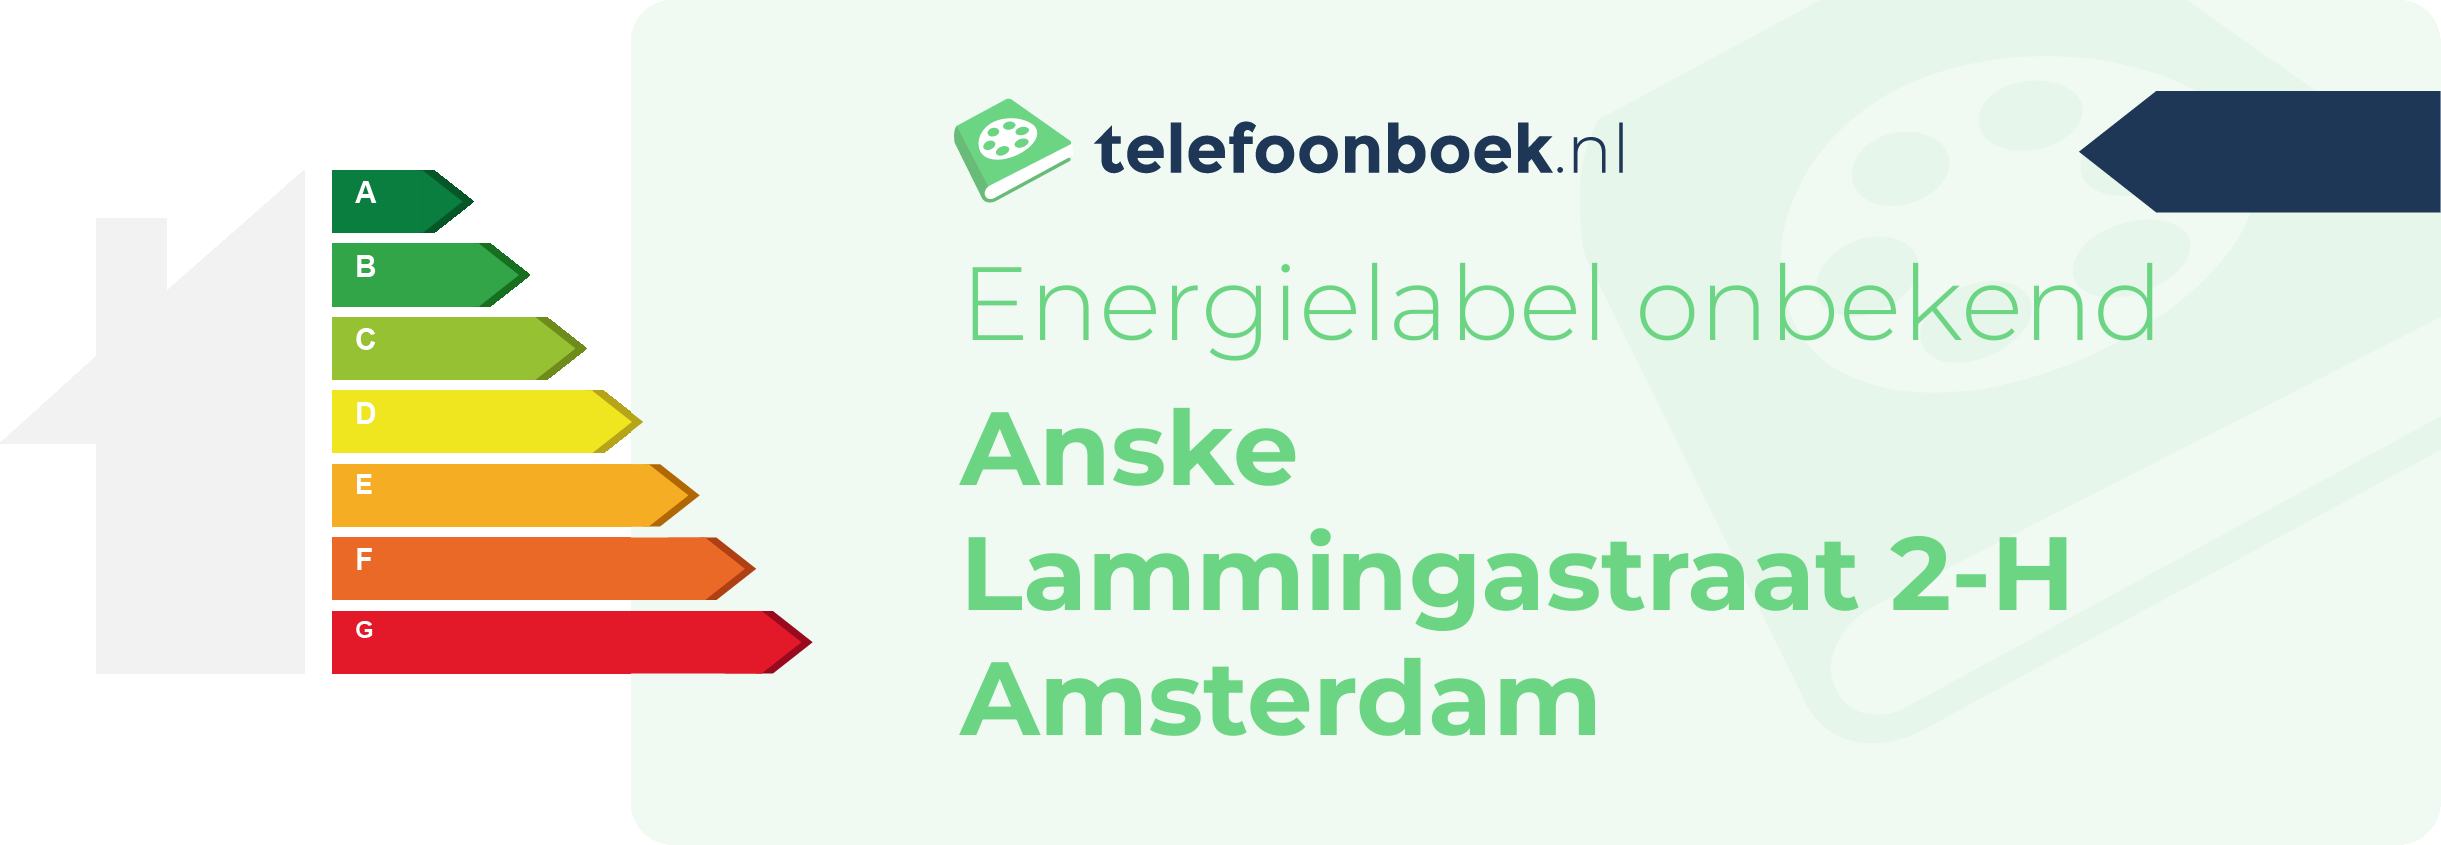 Energielabel Anske Lammingastraat 2-H Amsterdam